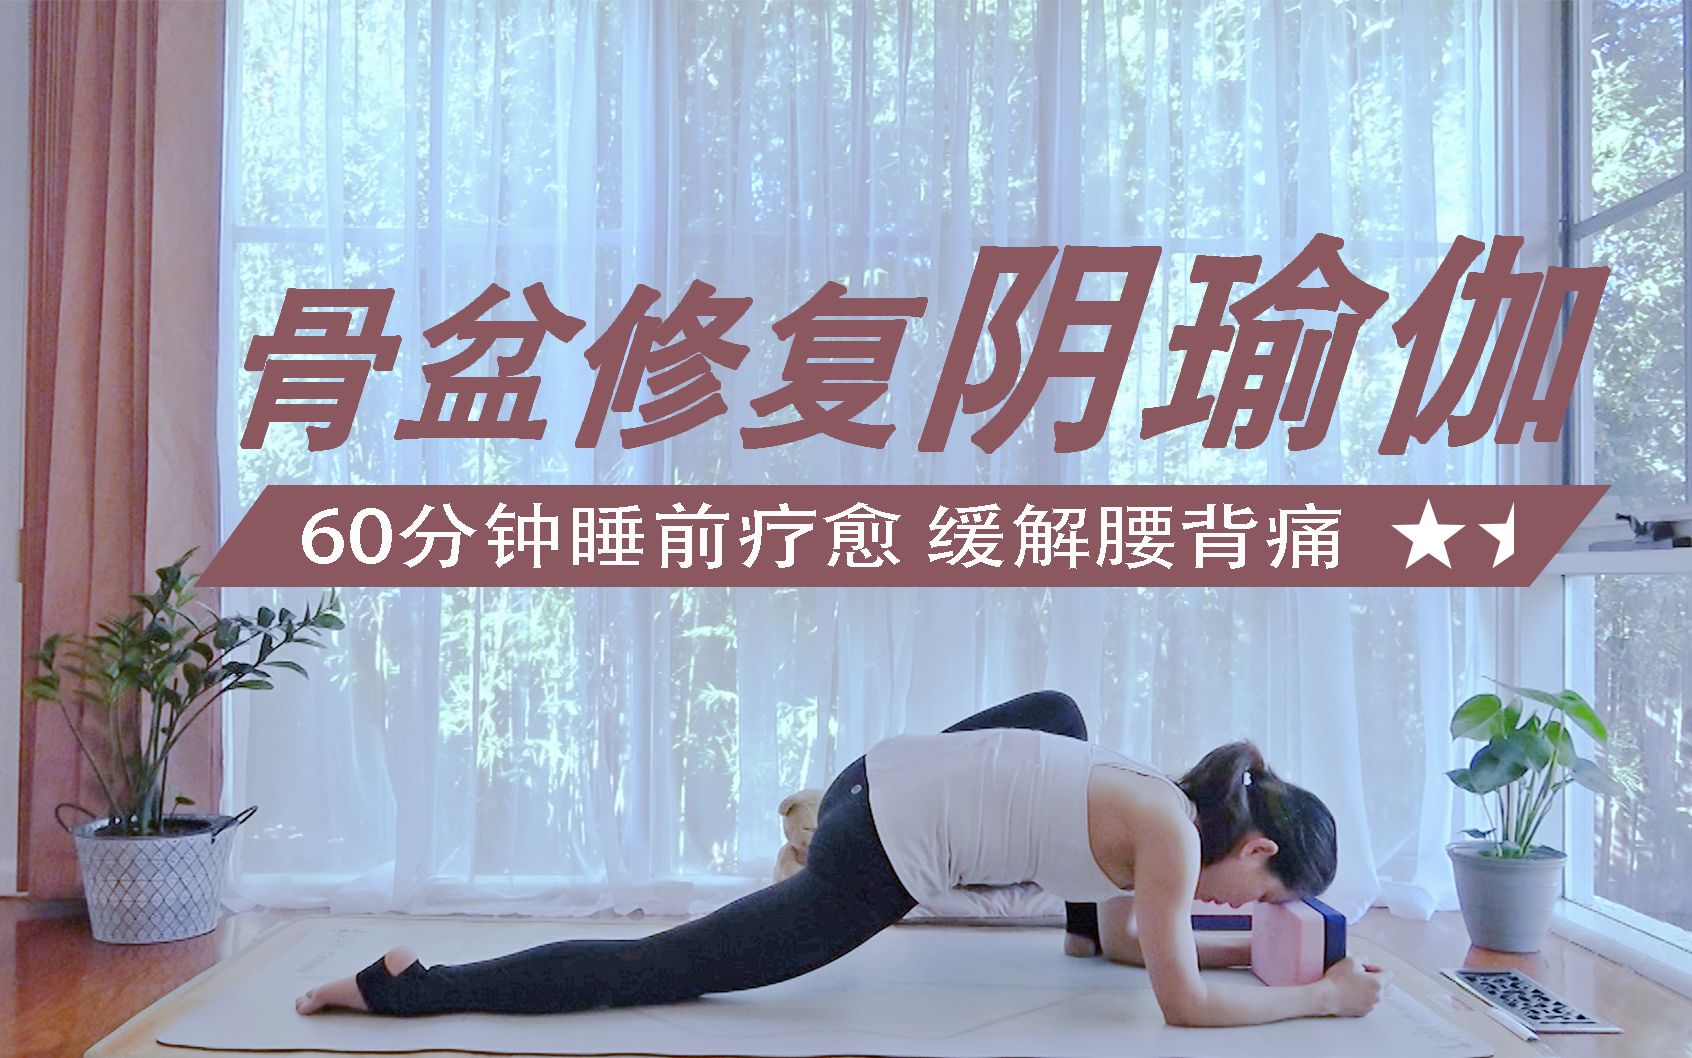 【60分钟阴瑜伽 骨盆修复】快节奏的生活, 慢下来才能重蓄能量  疗愈身心 骨盆正位 缓解腰背酸痛 Yin Yoga for hips